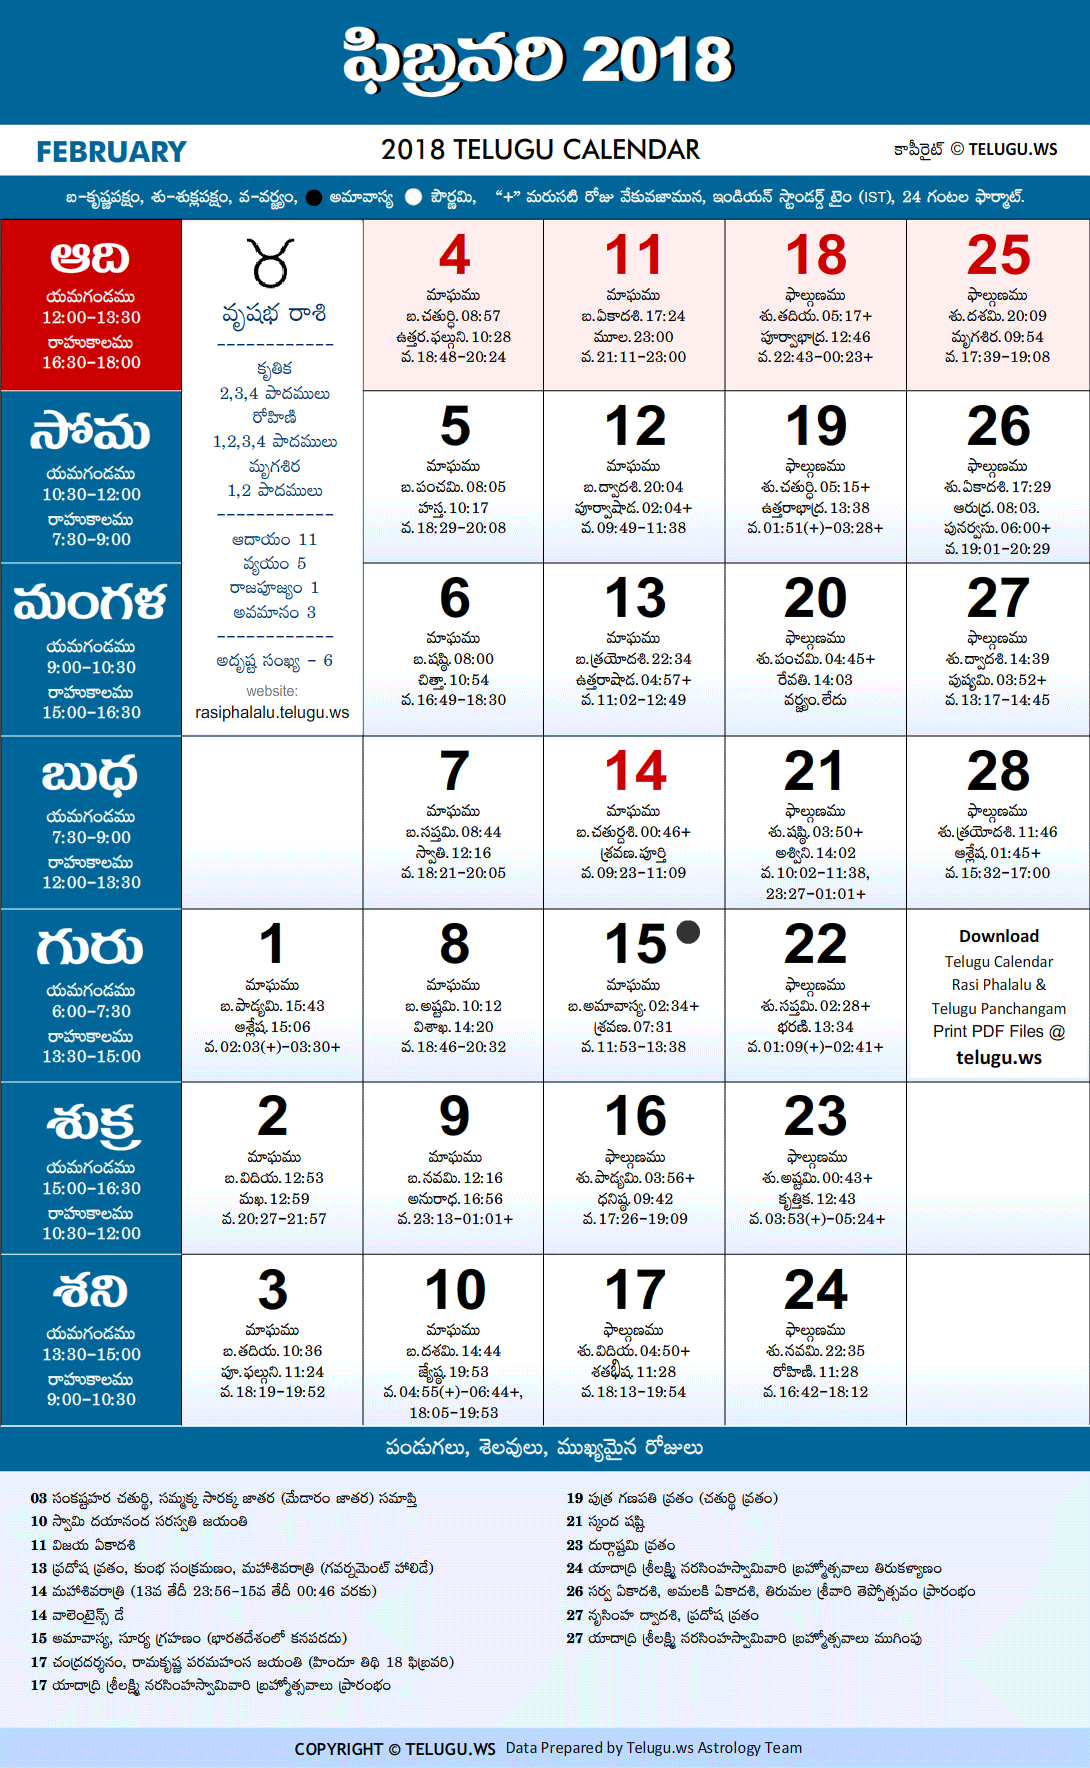 Telugu Calendar 2018 February Festivals and Holidays